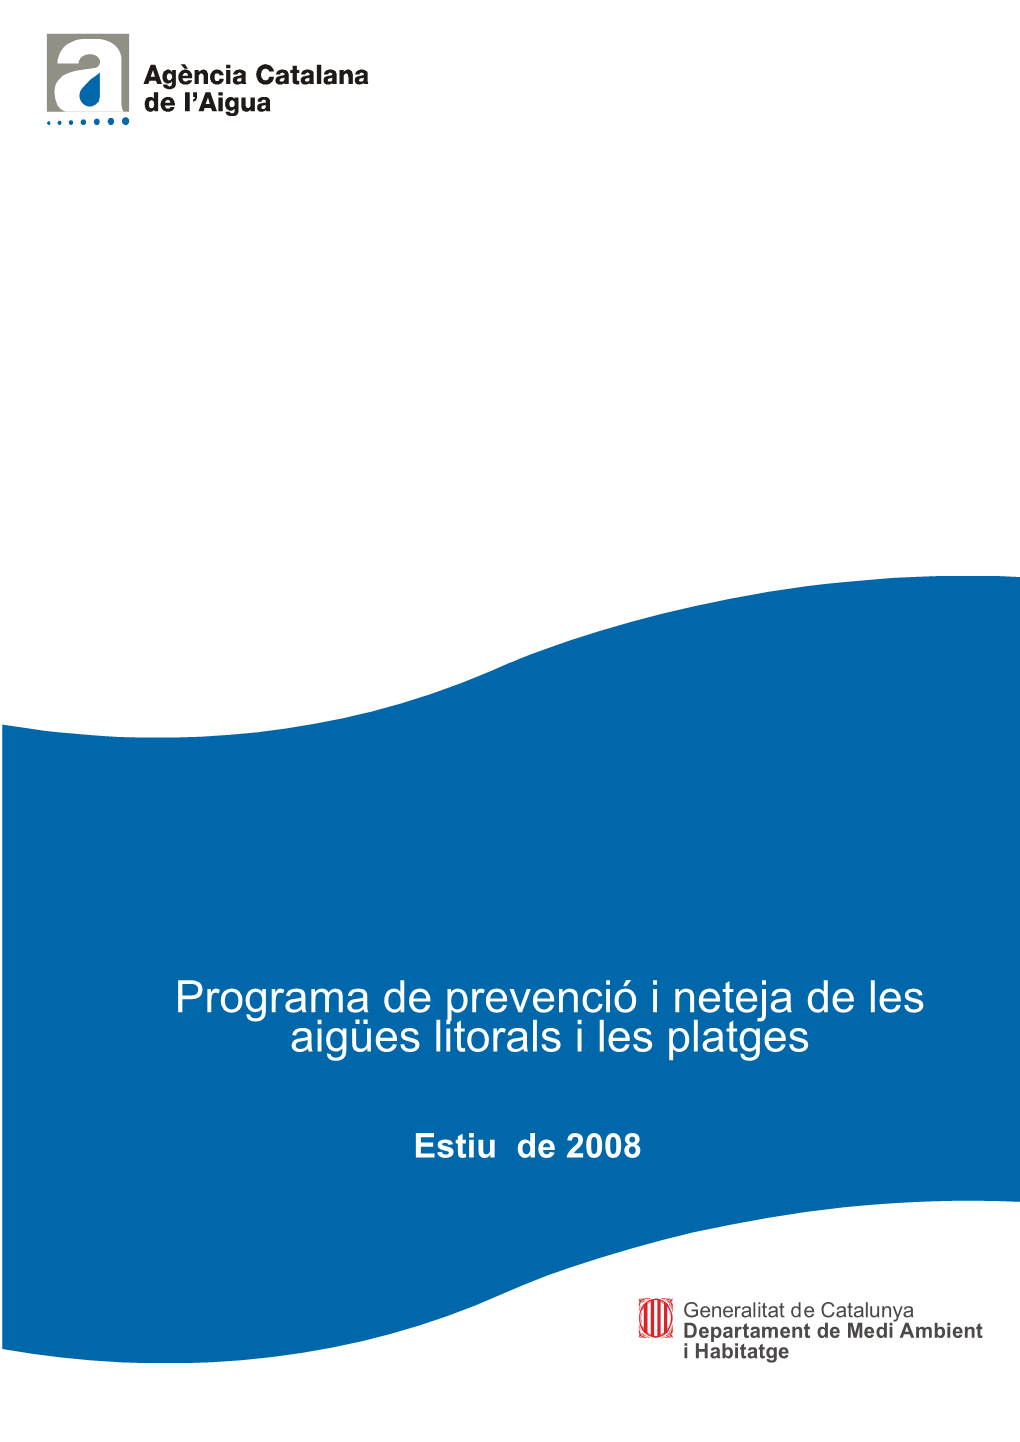 Programa De Prevenció I Neteja De Les Aigües Litorals I Les Platges, I Que Es Ve Realitzant Des De L’Any 2001